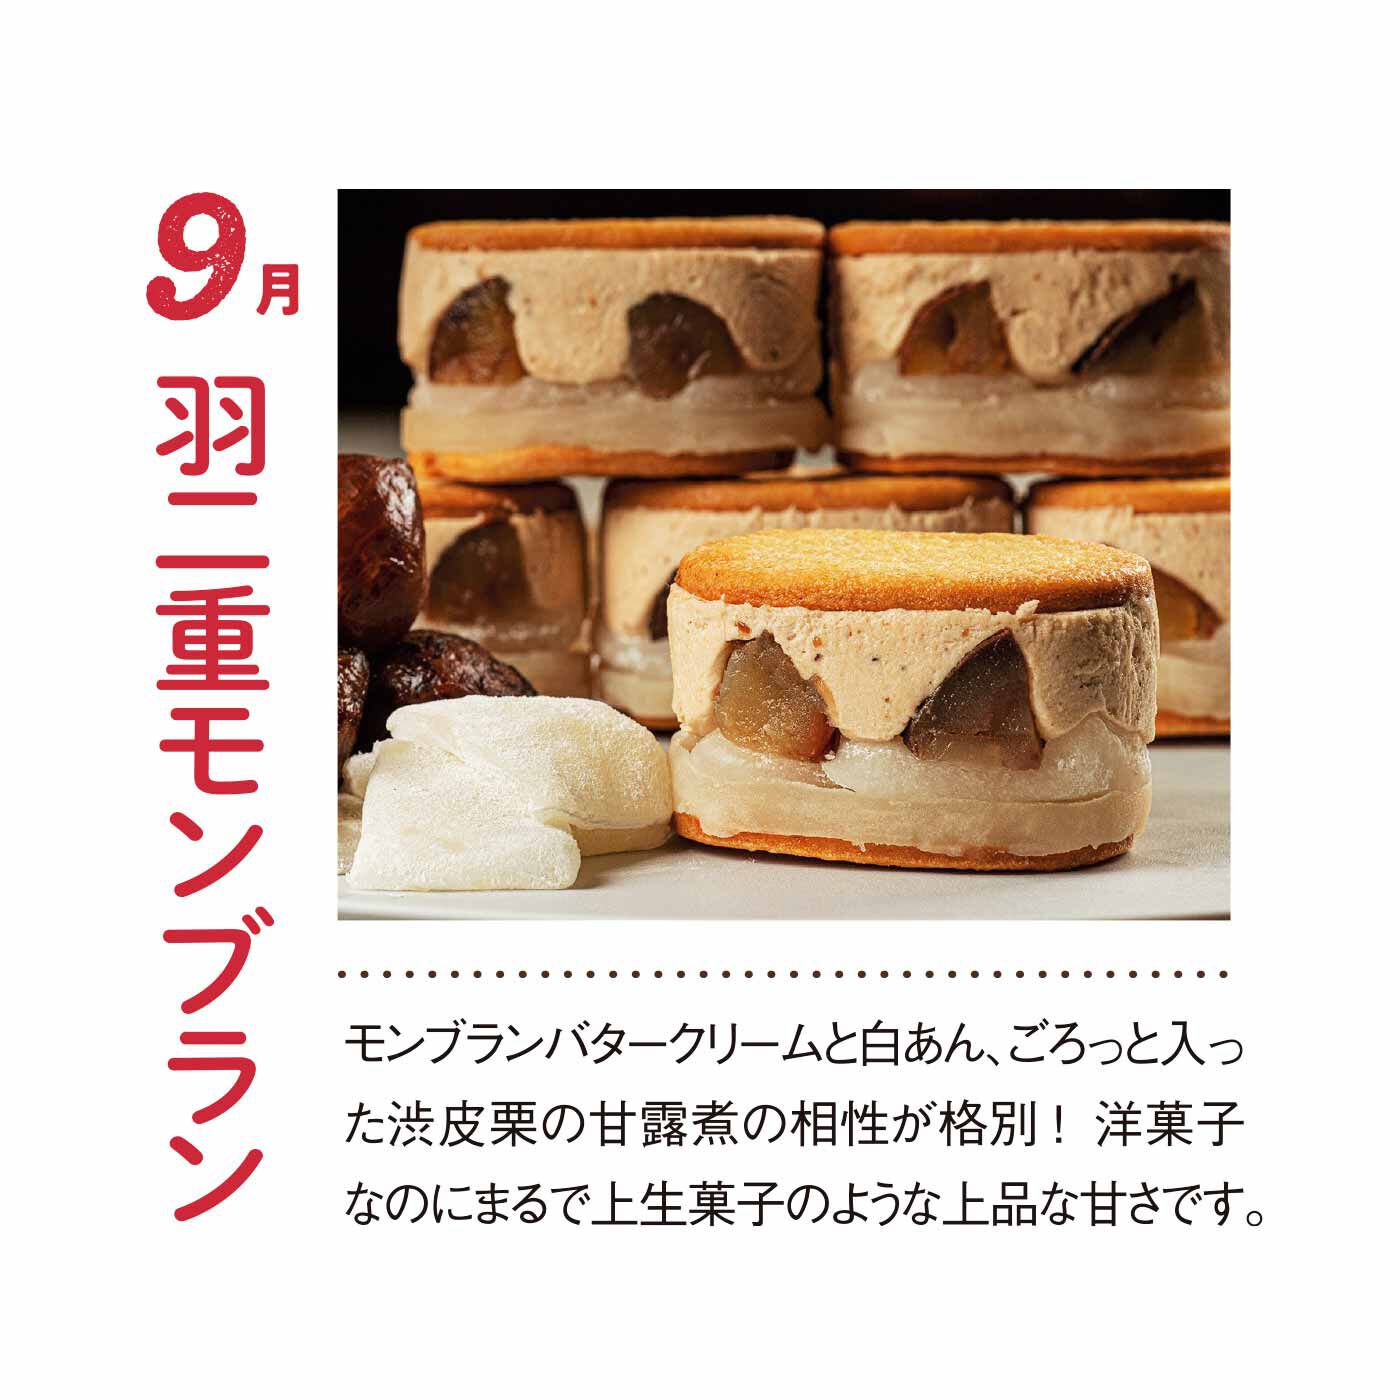 FP産地直送マルシェ|【締切 5/6】とろけすぎるチーズレストラン「RUNNY CHEESE」の羽二重バターチーズサンド8ヵ月コース